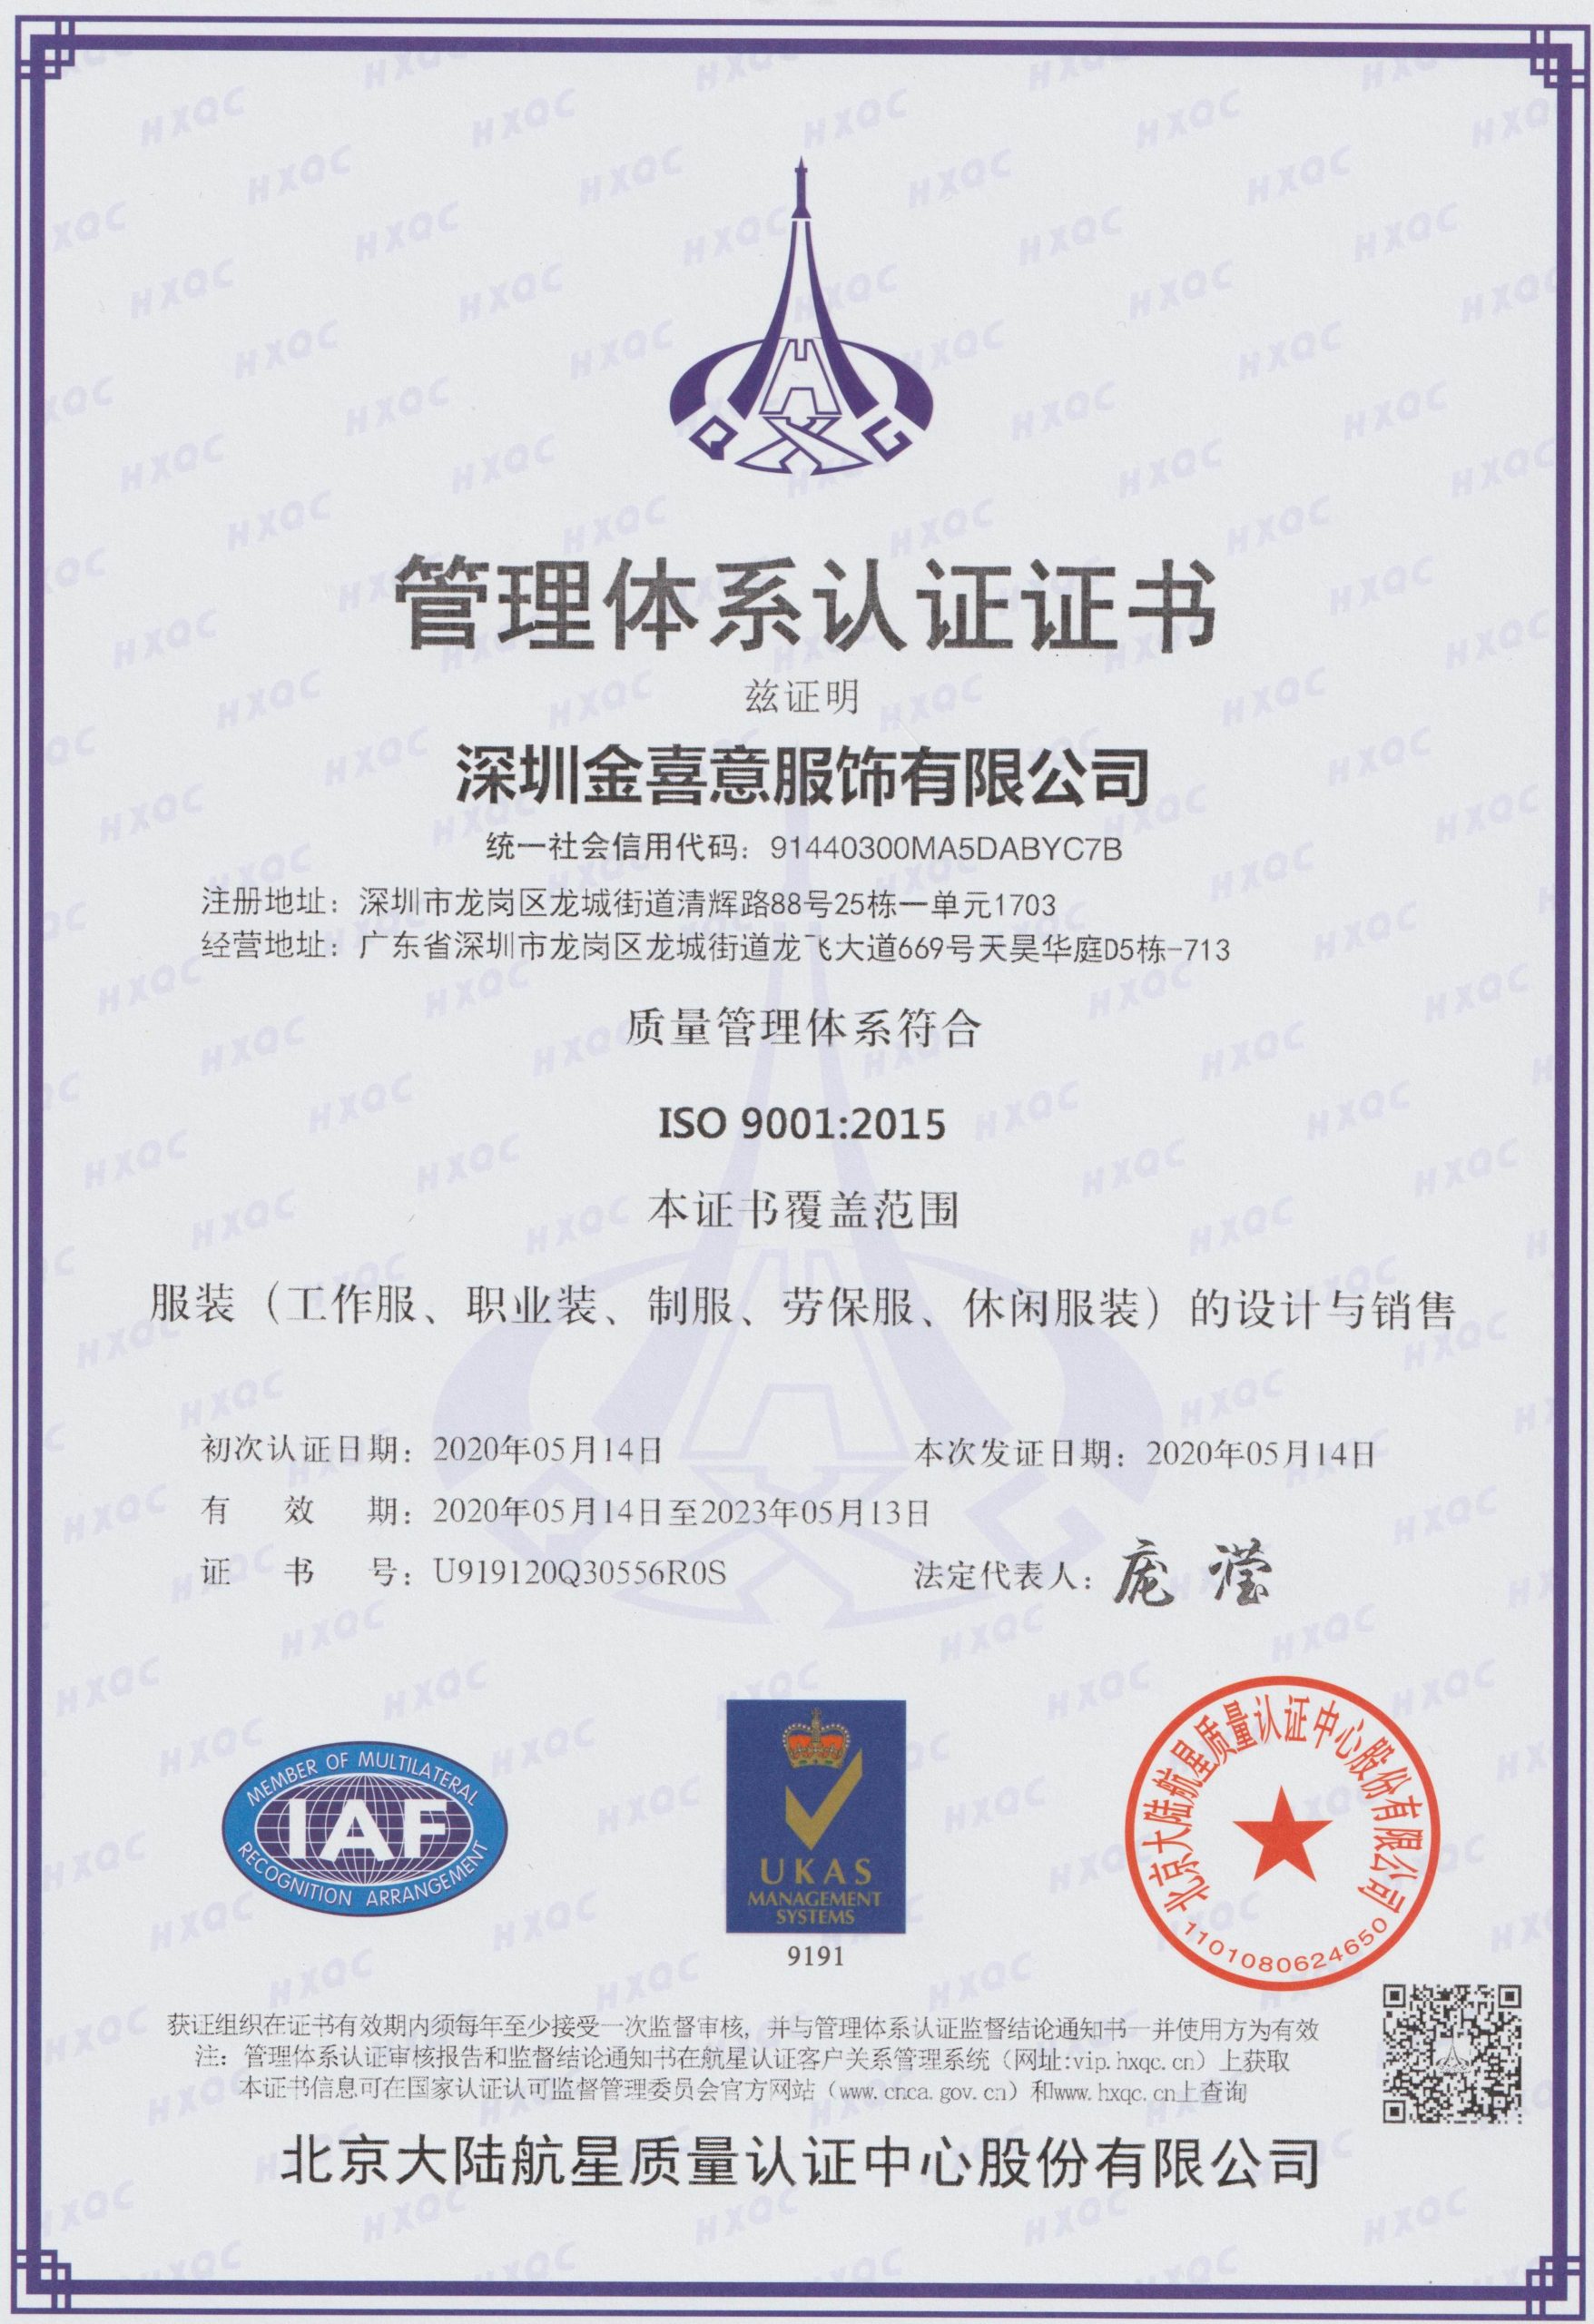 热烈庆祝我司顺利通过ISO三体系认证并取得证书